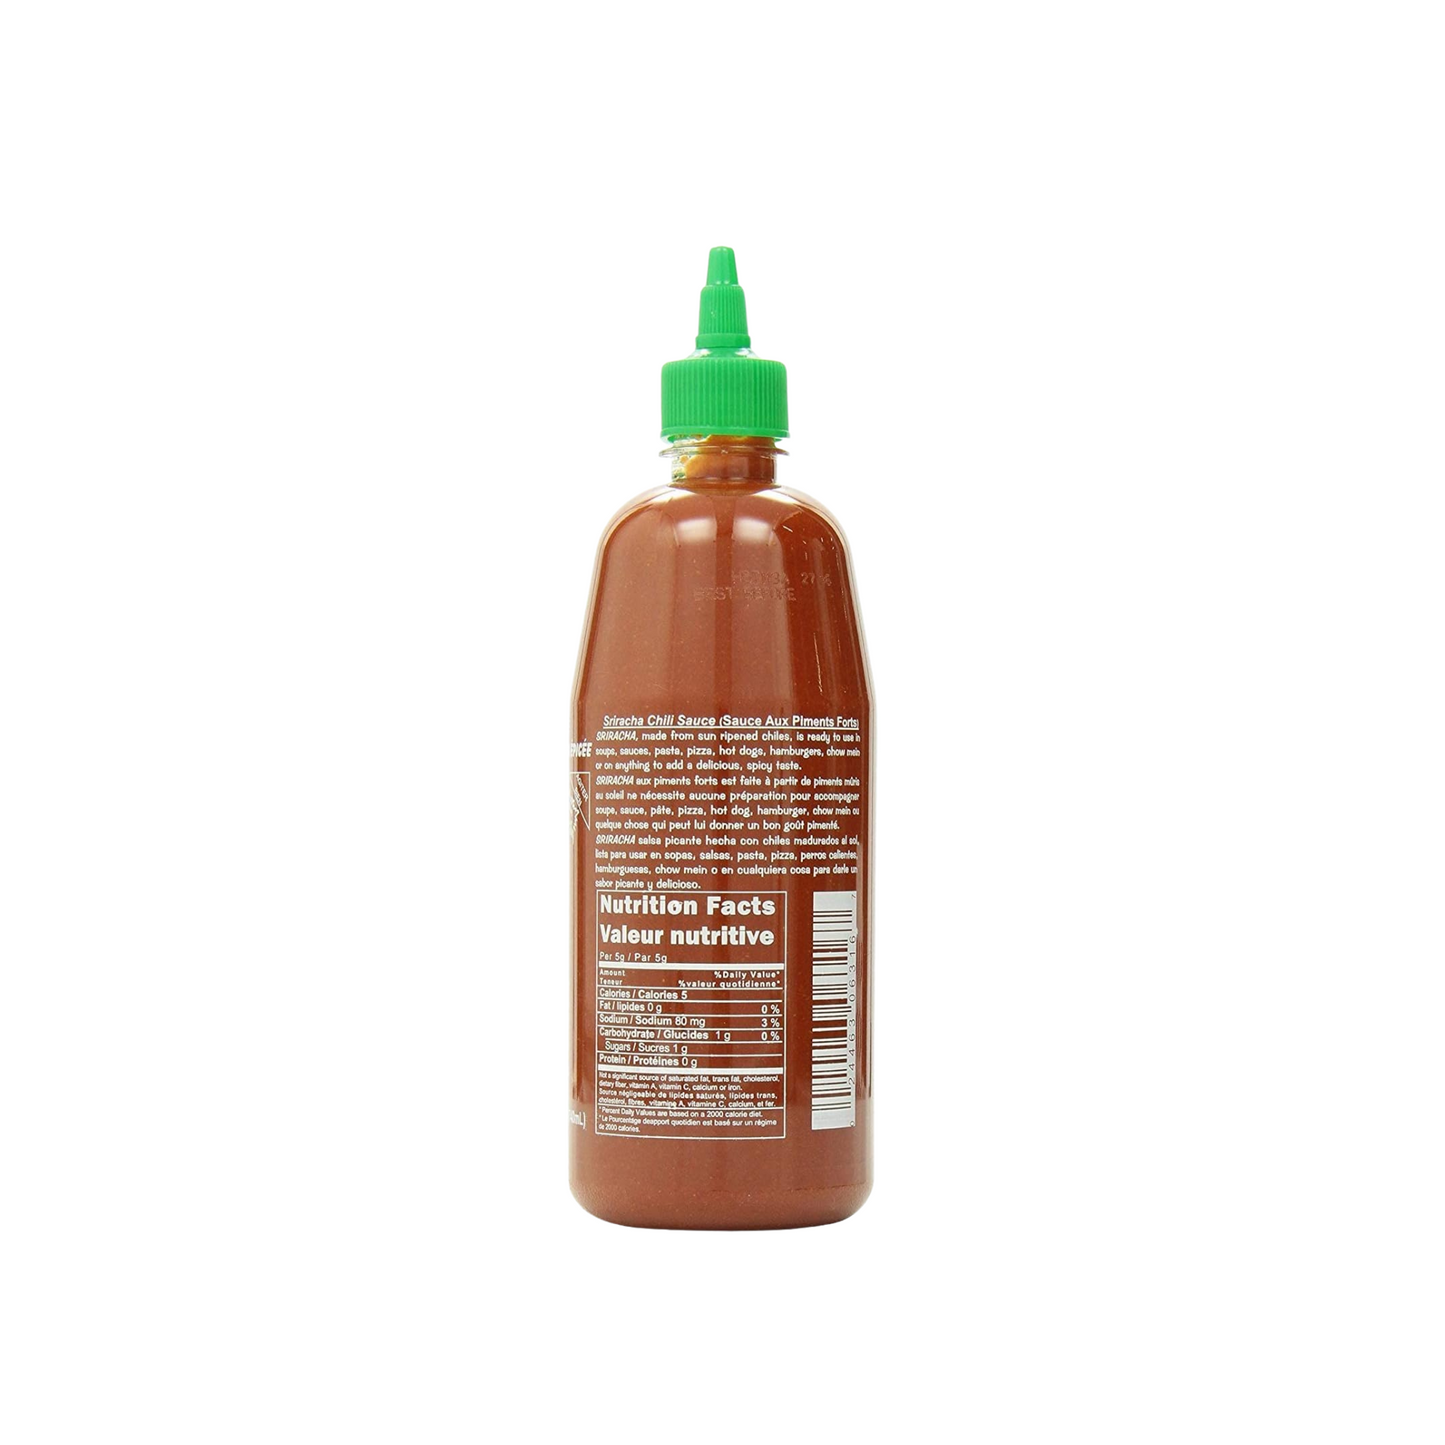 Sriracha Hot Chilli Sauce, 714ml